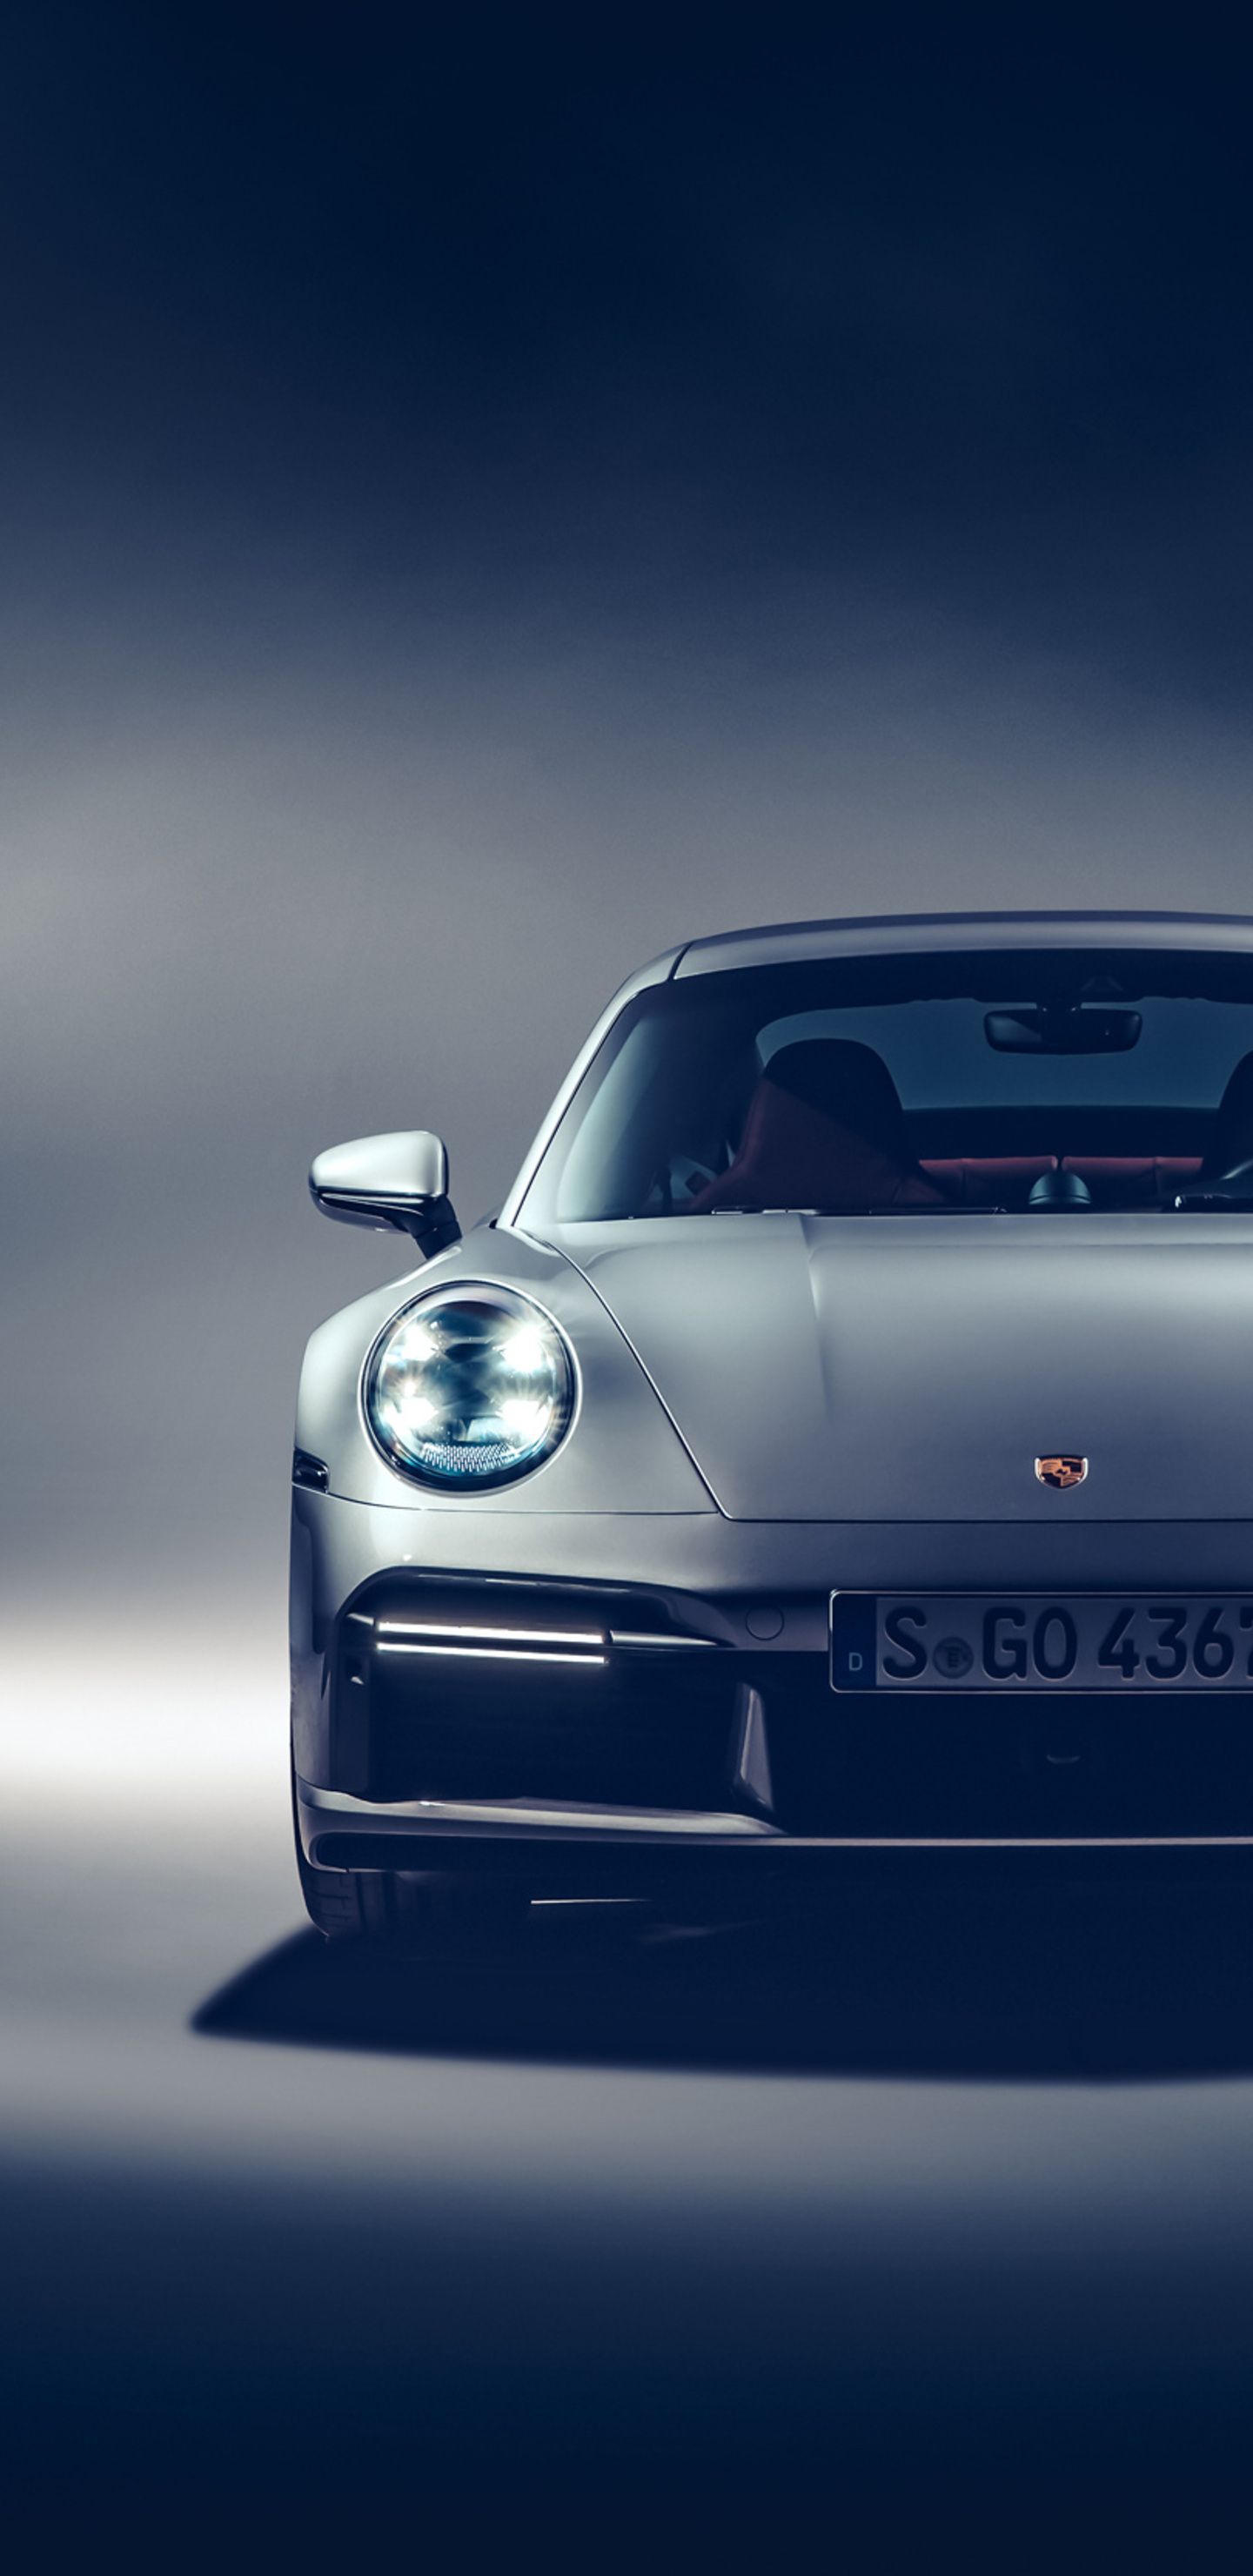 Đại lý Porsche treo nhầm giá xe chỉ ngang Grand i10 khách hàng tranh nhau  đặt cọc  Tuổi Trẻ Online